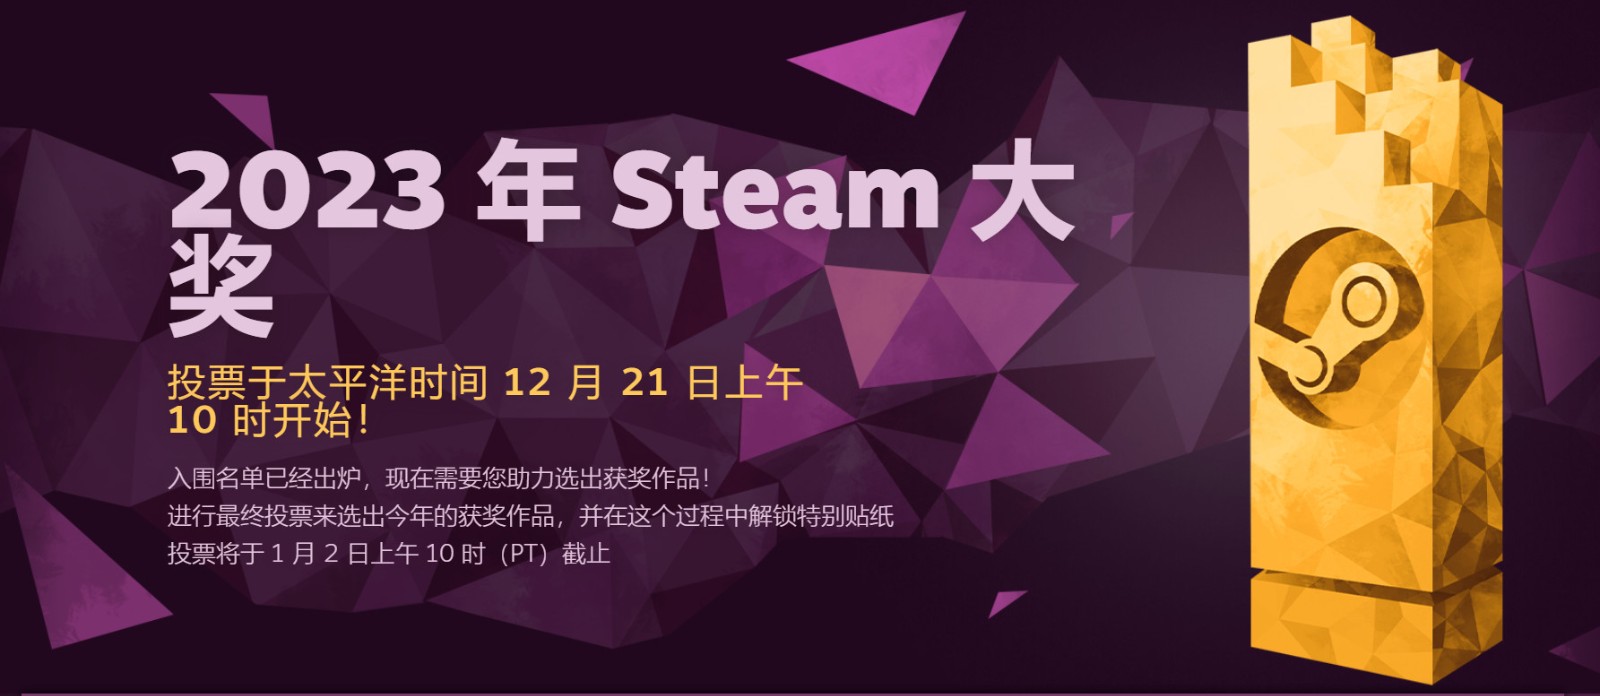 《星空》入围2023年Steam“最具创意游戏玩法”大奖提名